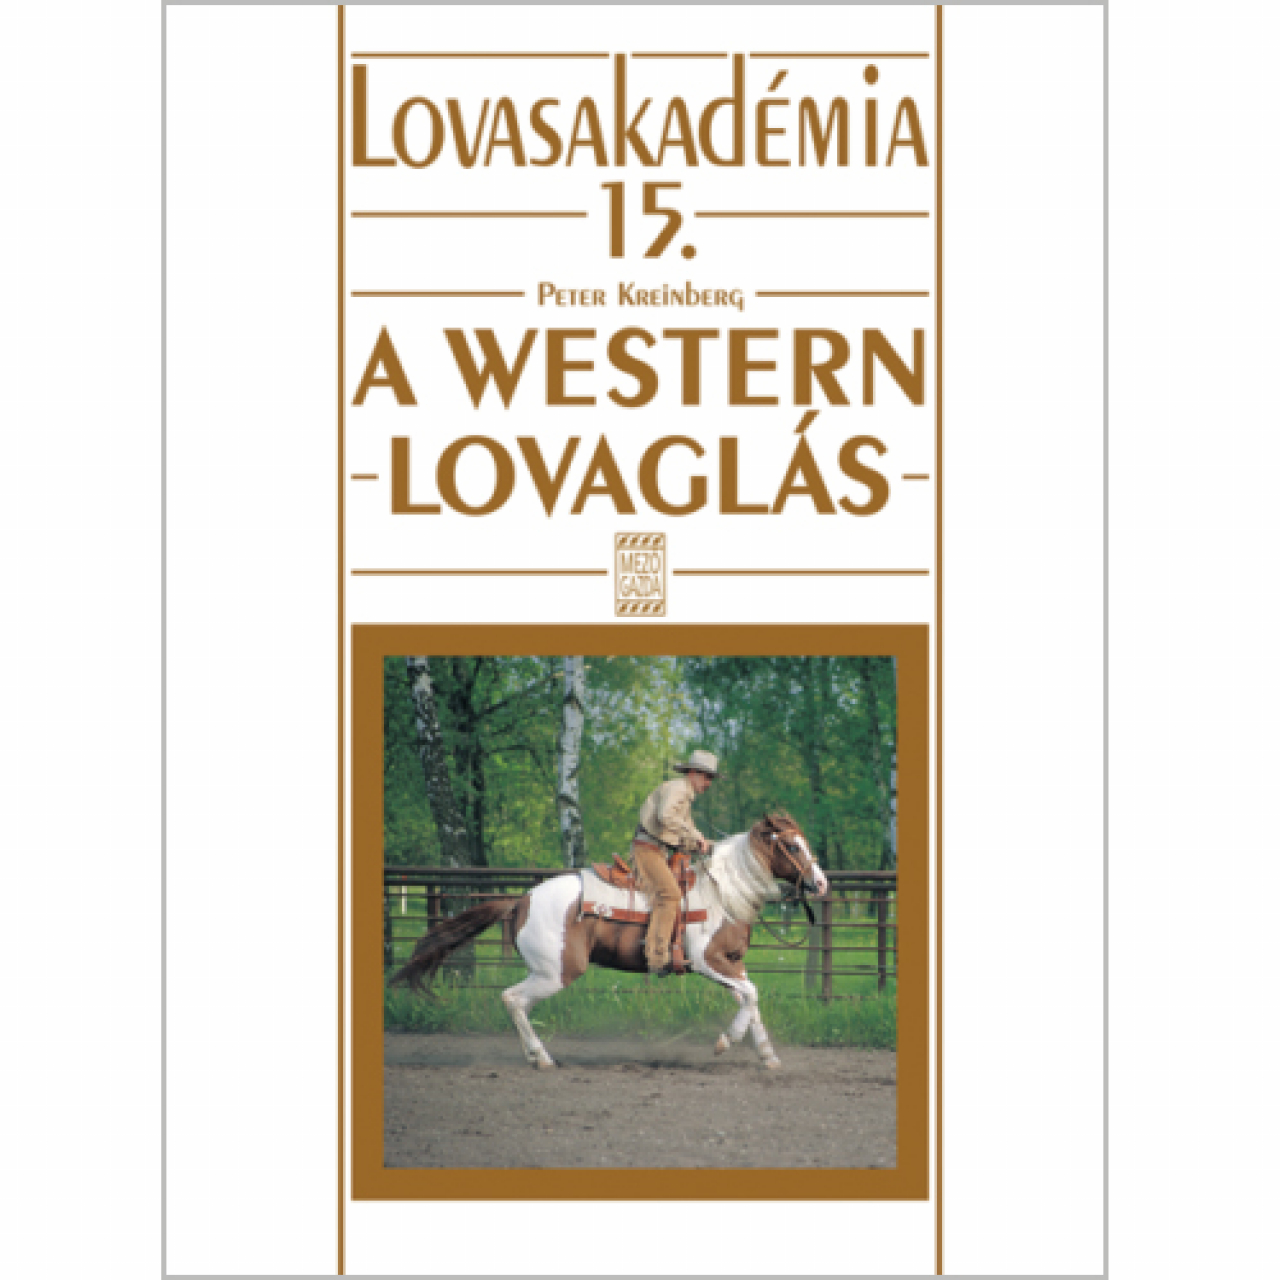 Peter Kreinberg: A westernlovaglás Lovasakadémia 15.